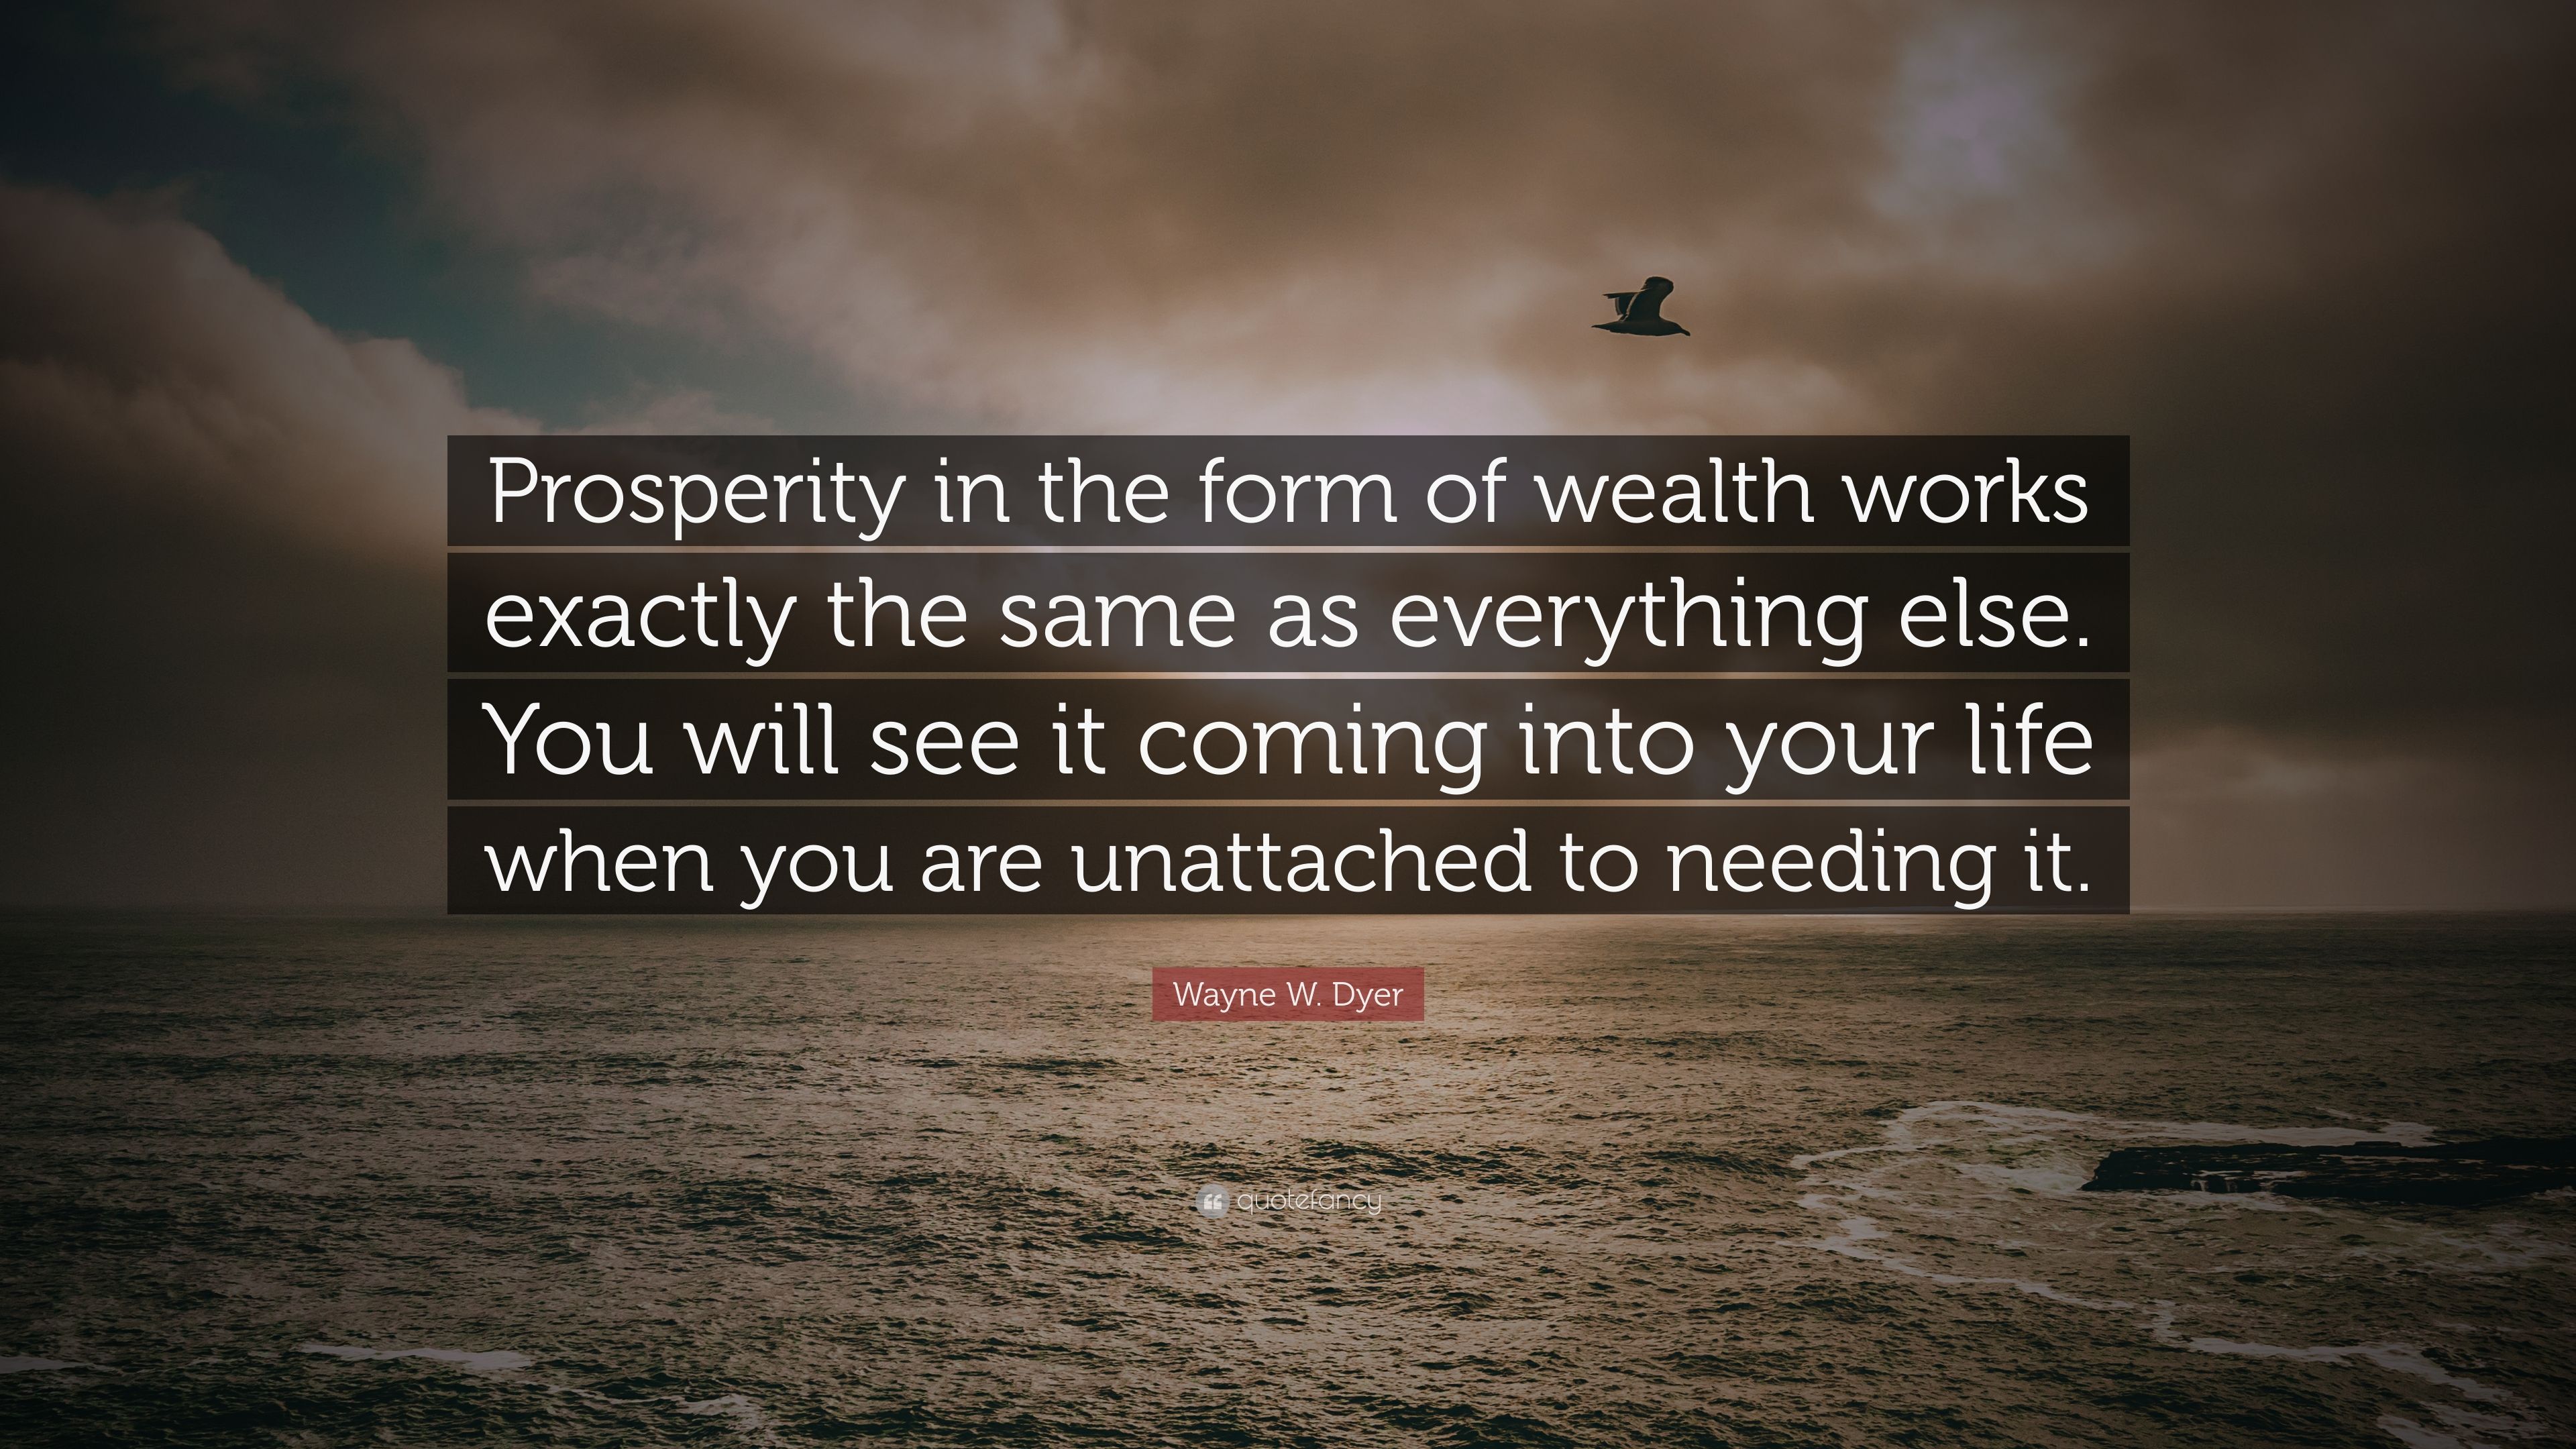 quotes on prosperity